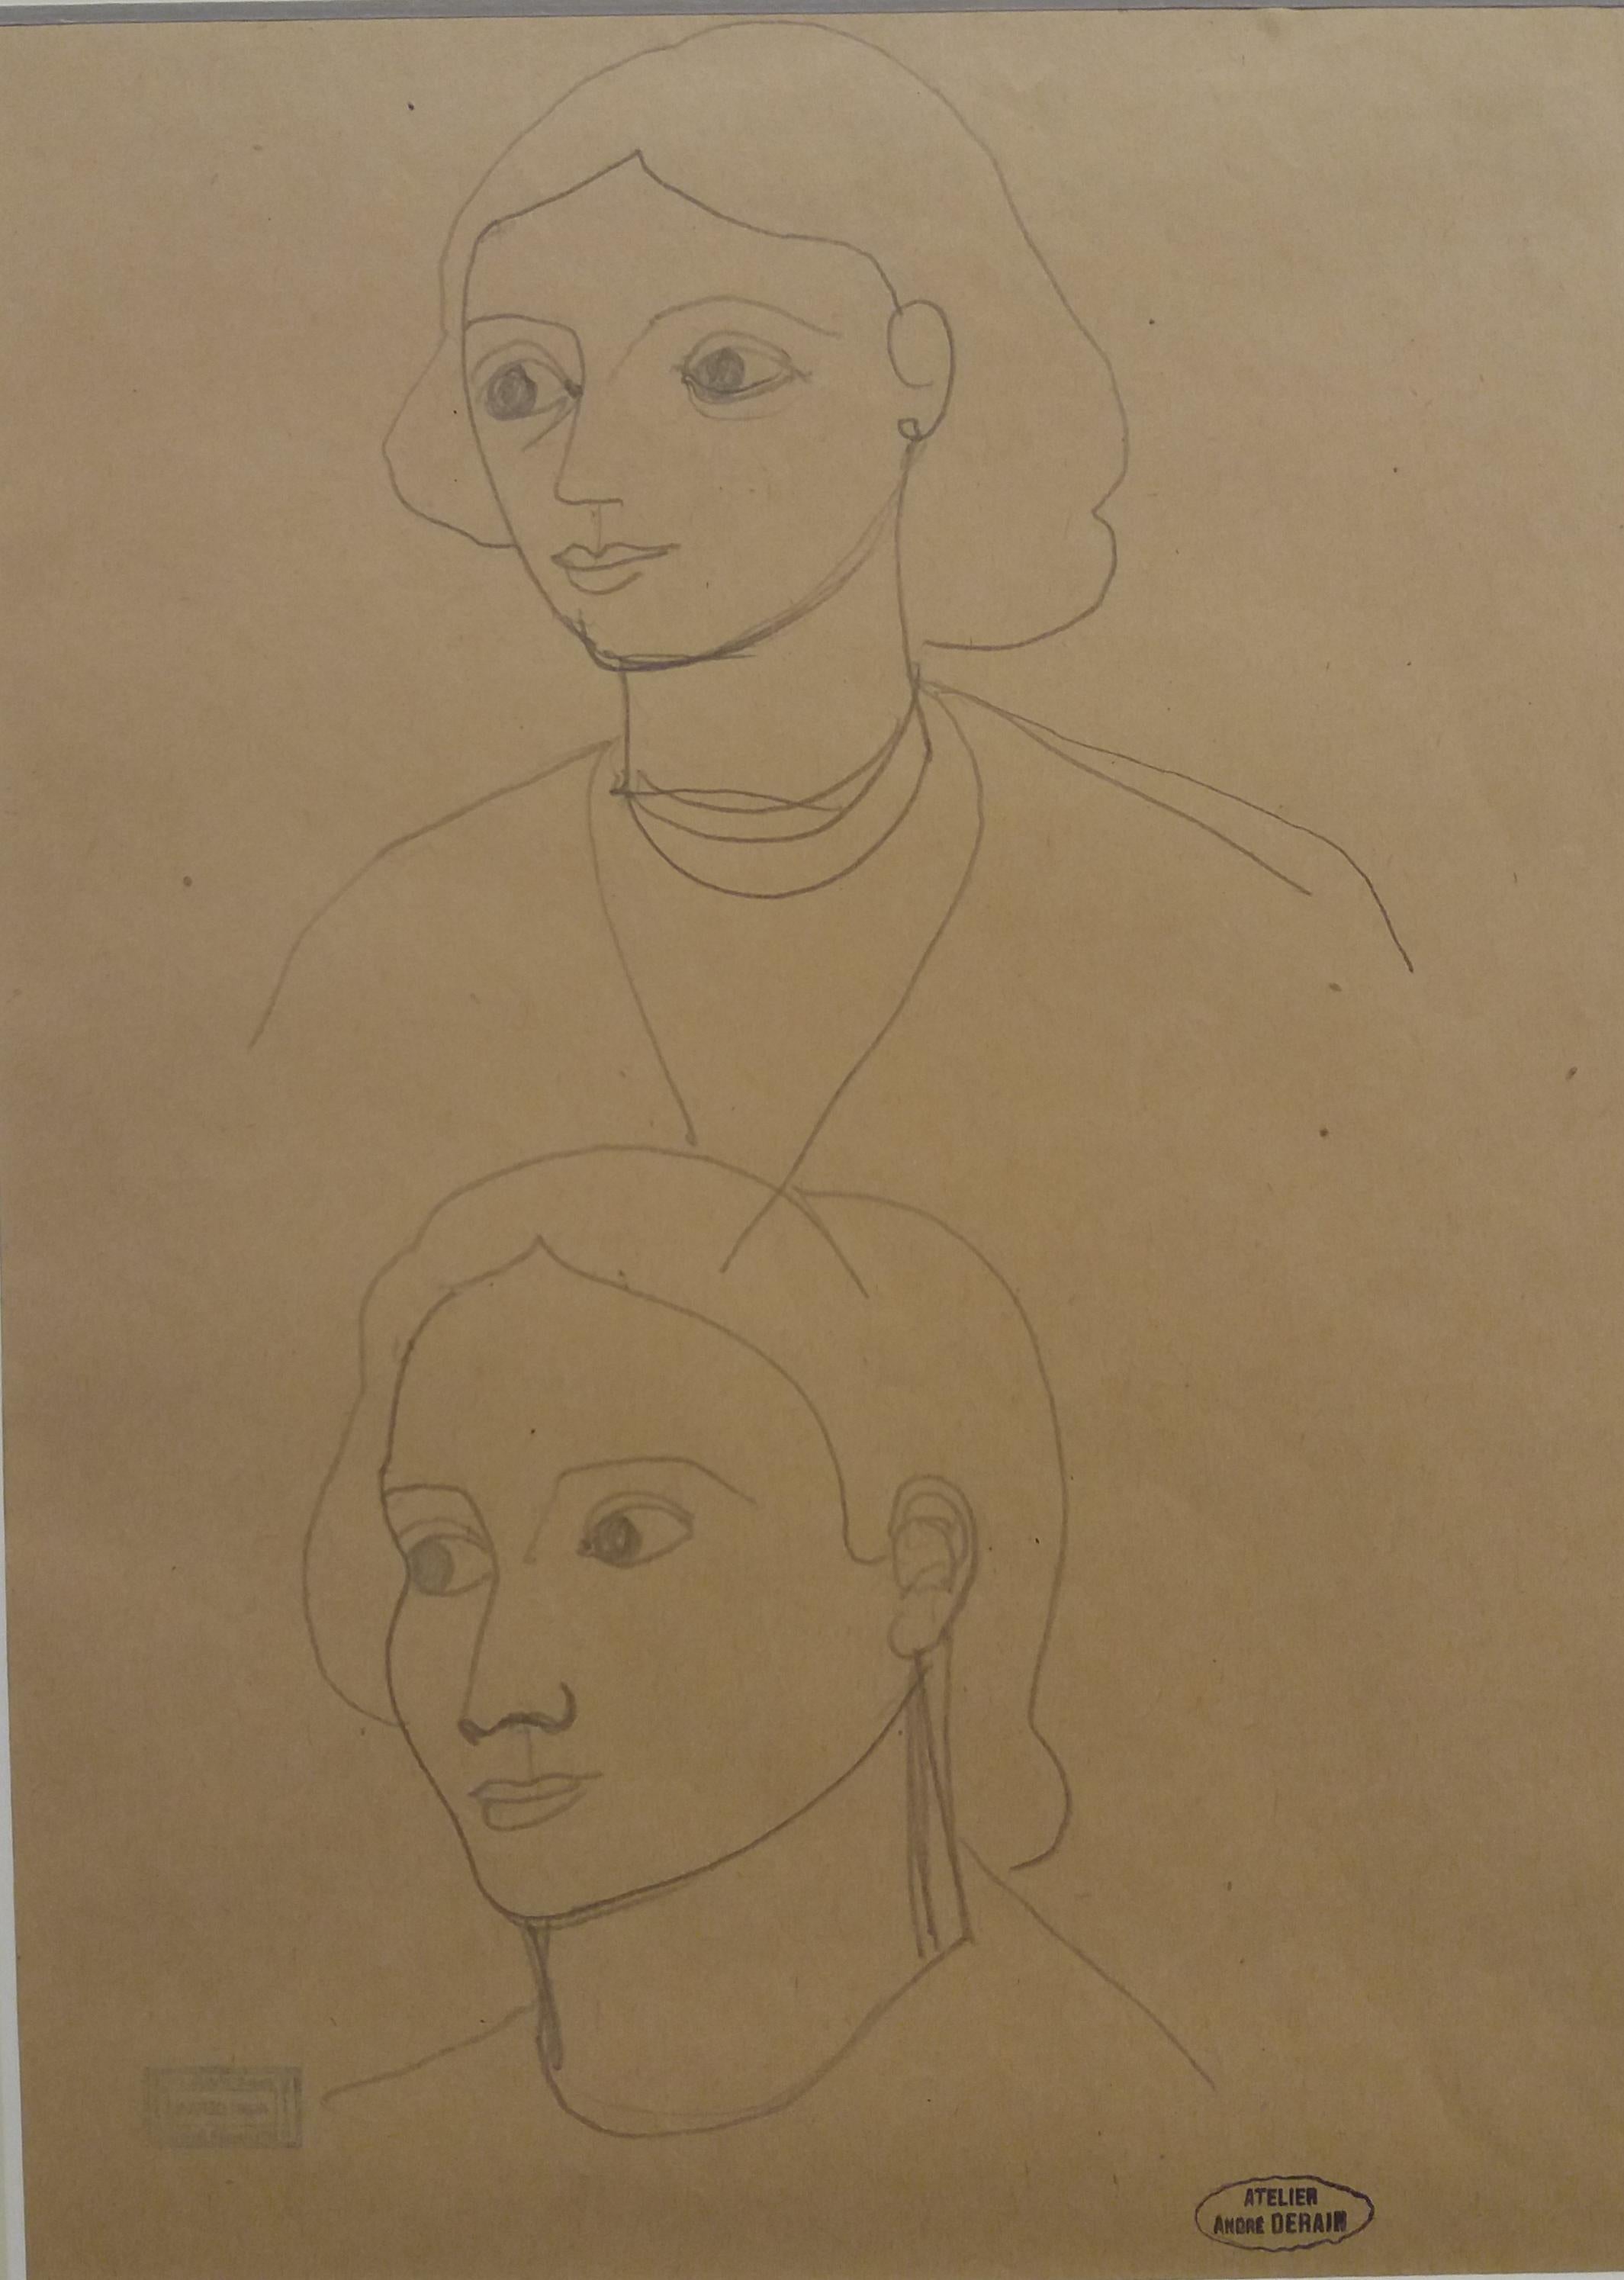 Andre Derain 94 Sketch of Faces, dessin original au crayon - Fauvisme Painting par André Derain